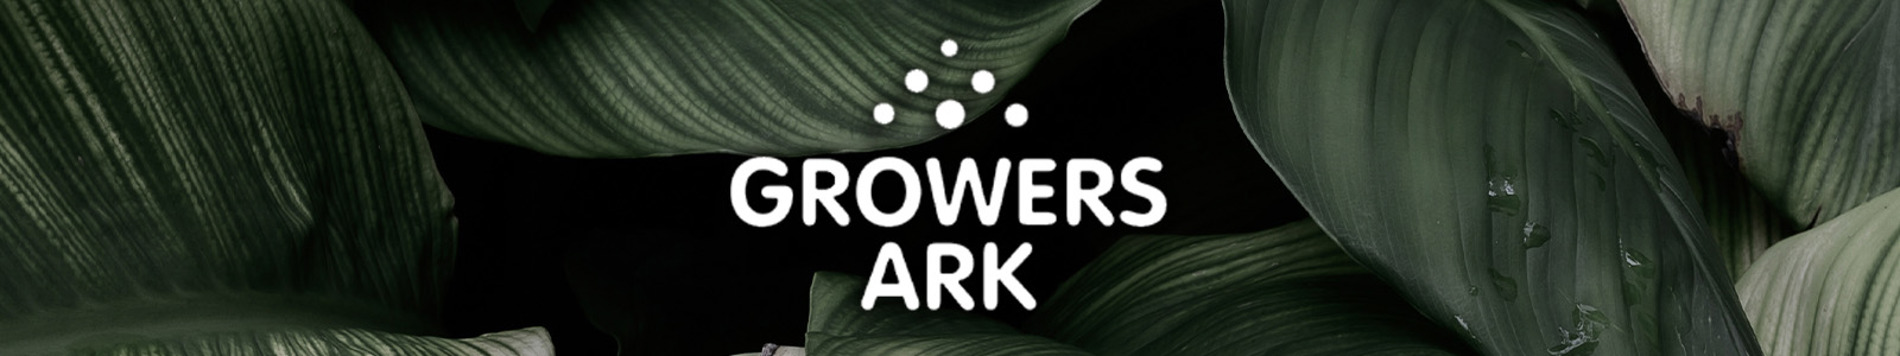 Growers Ark Nutrients